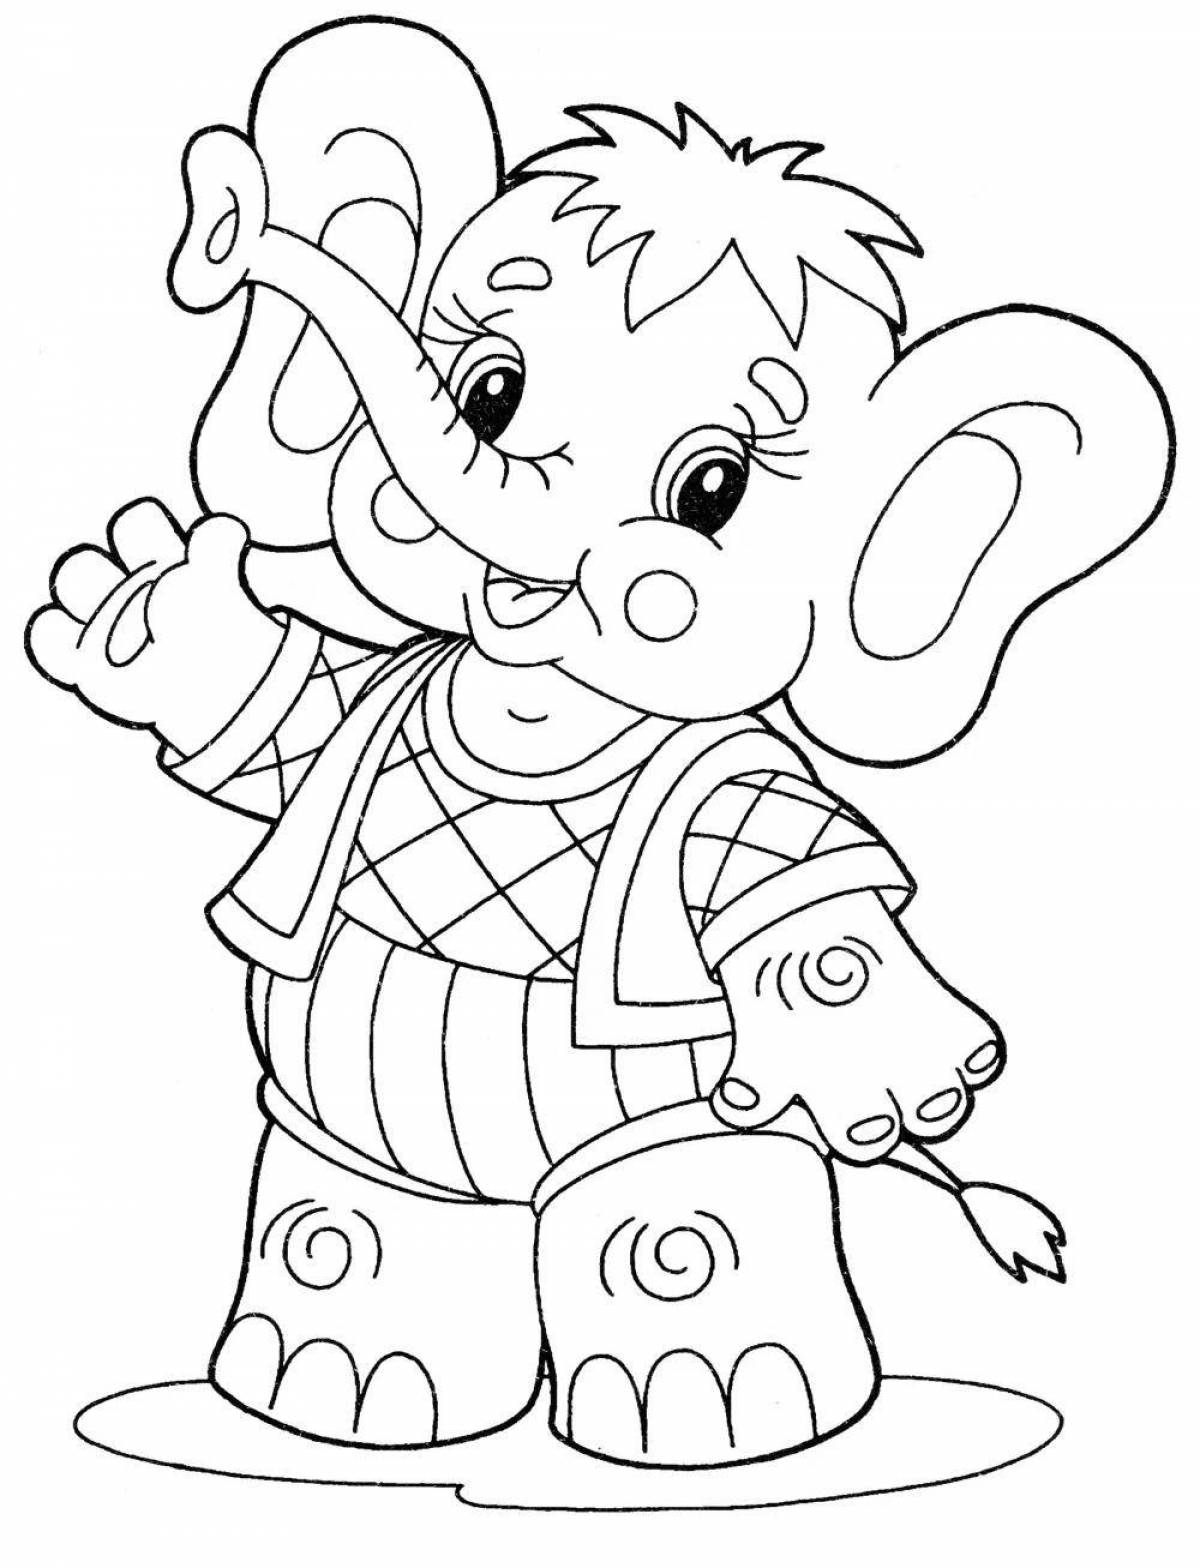 Веселая раскраска слона для детей